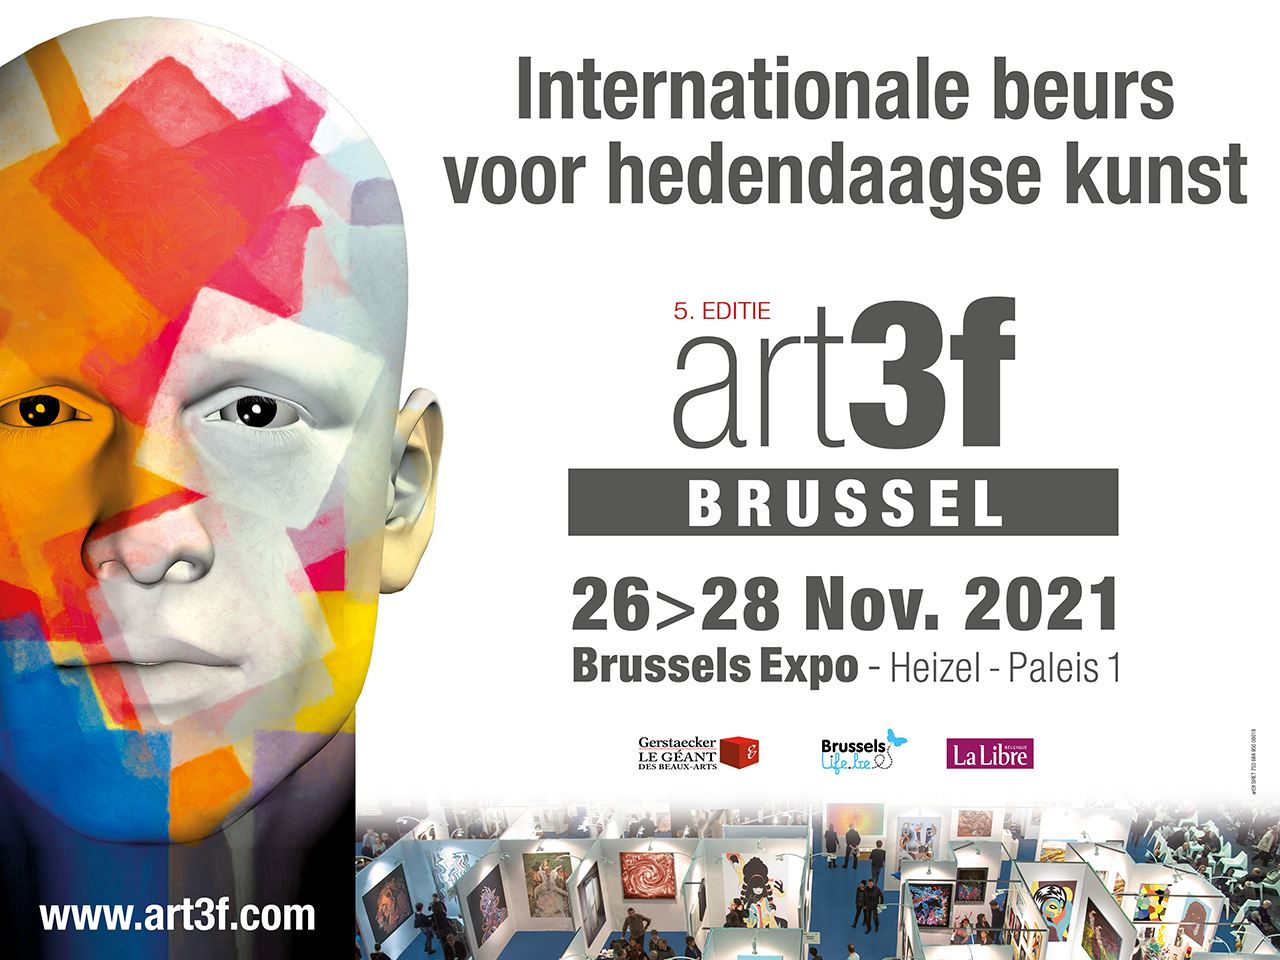 art3f Brussel 2021 Internationale hedendaagse kunstbeurs